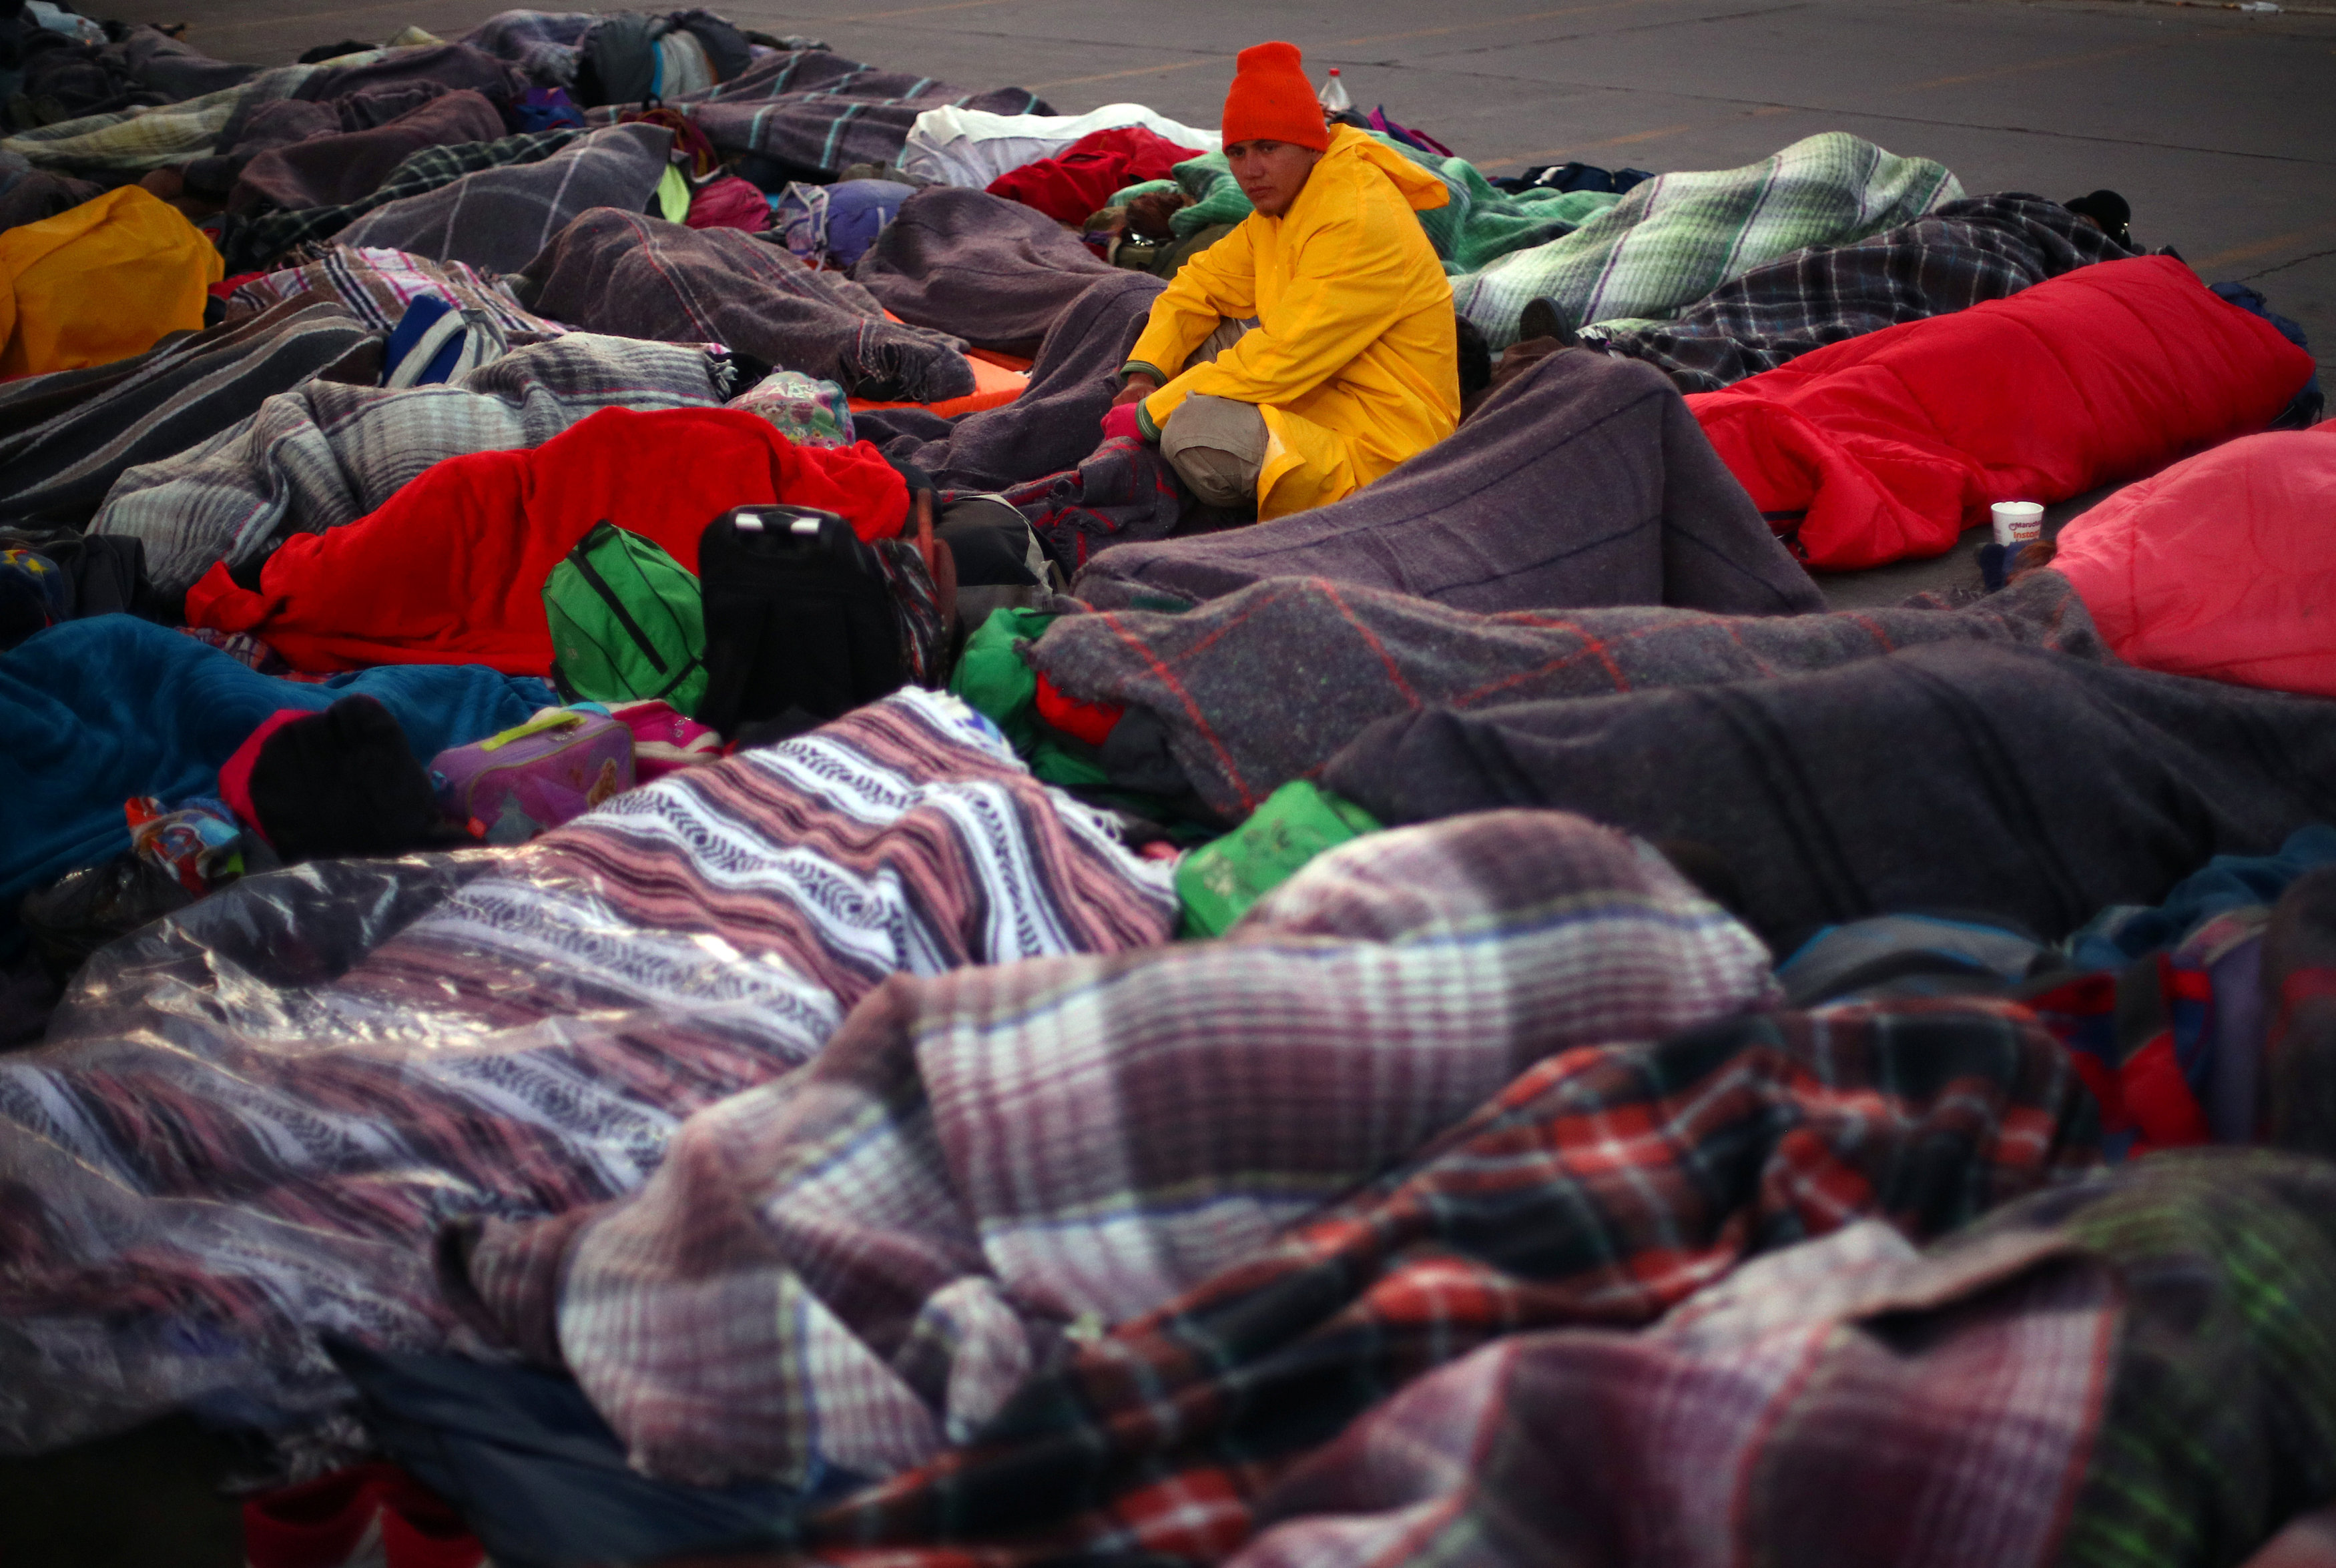 آلاف المهاجرون فى مخيم للايواء بالمكسيك (1)